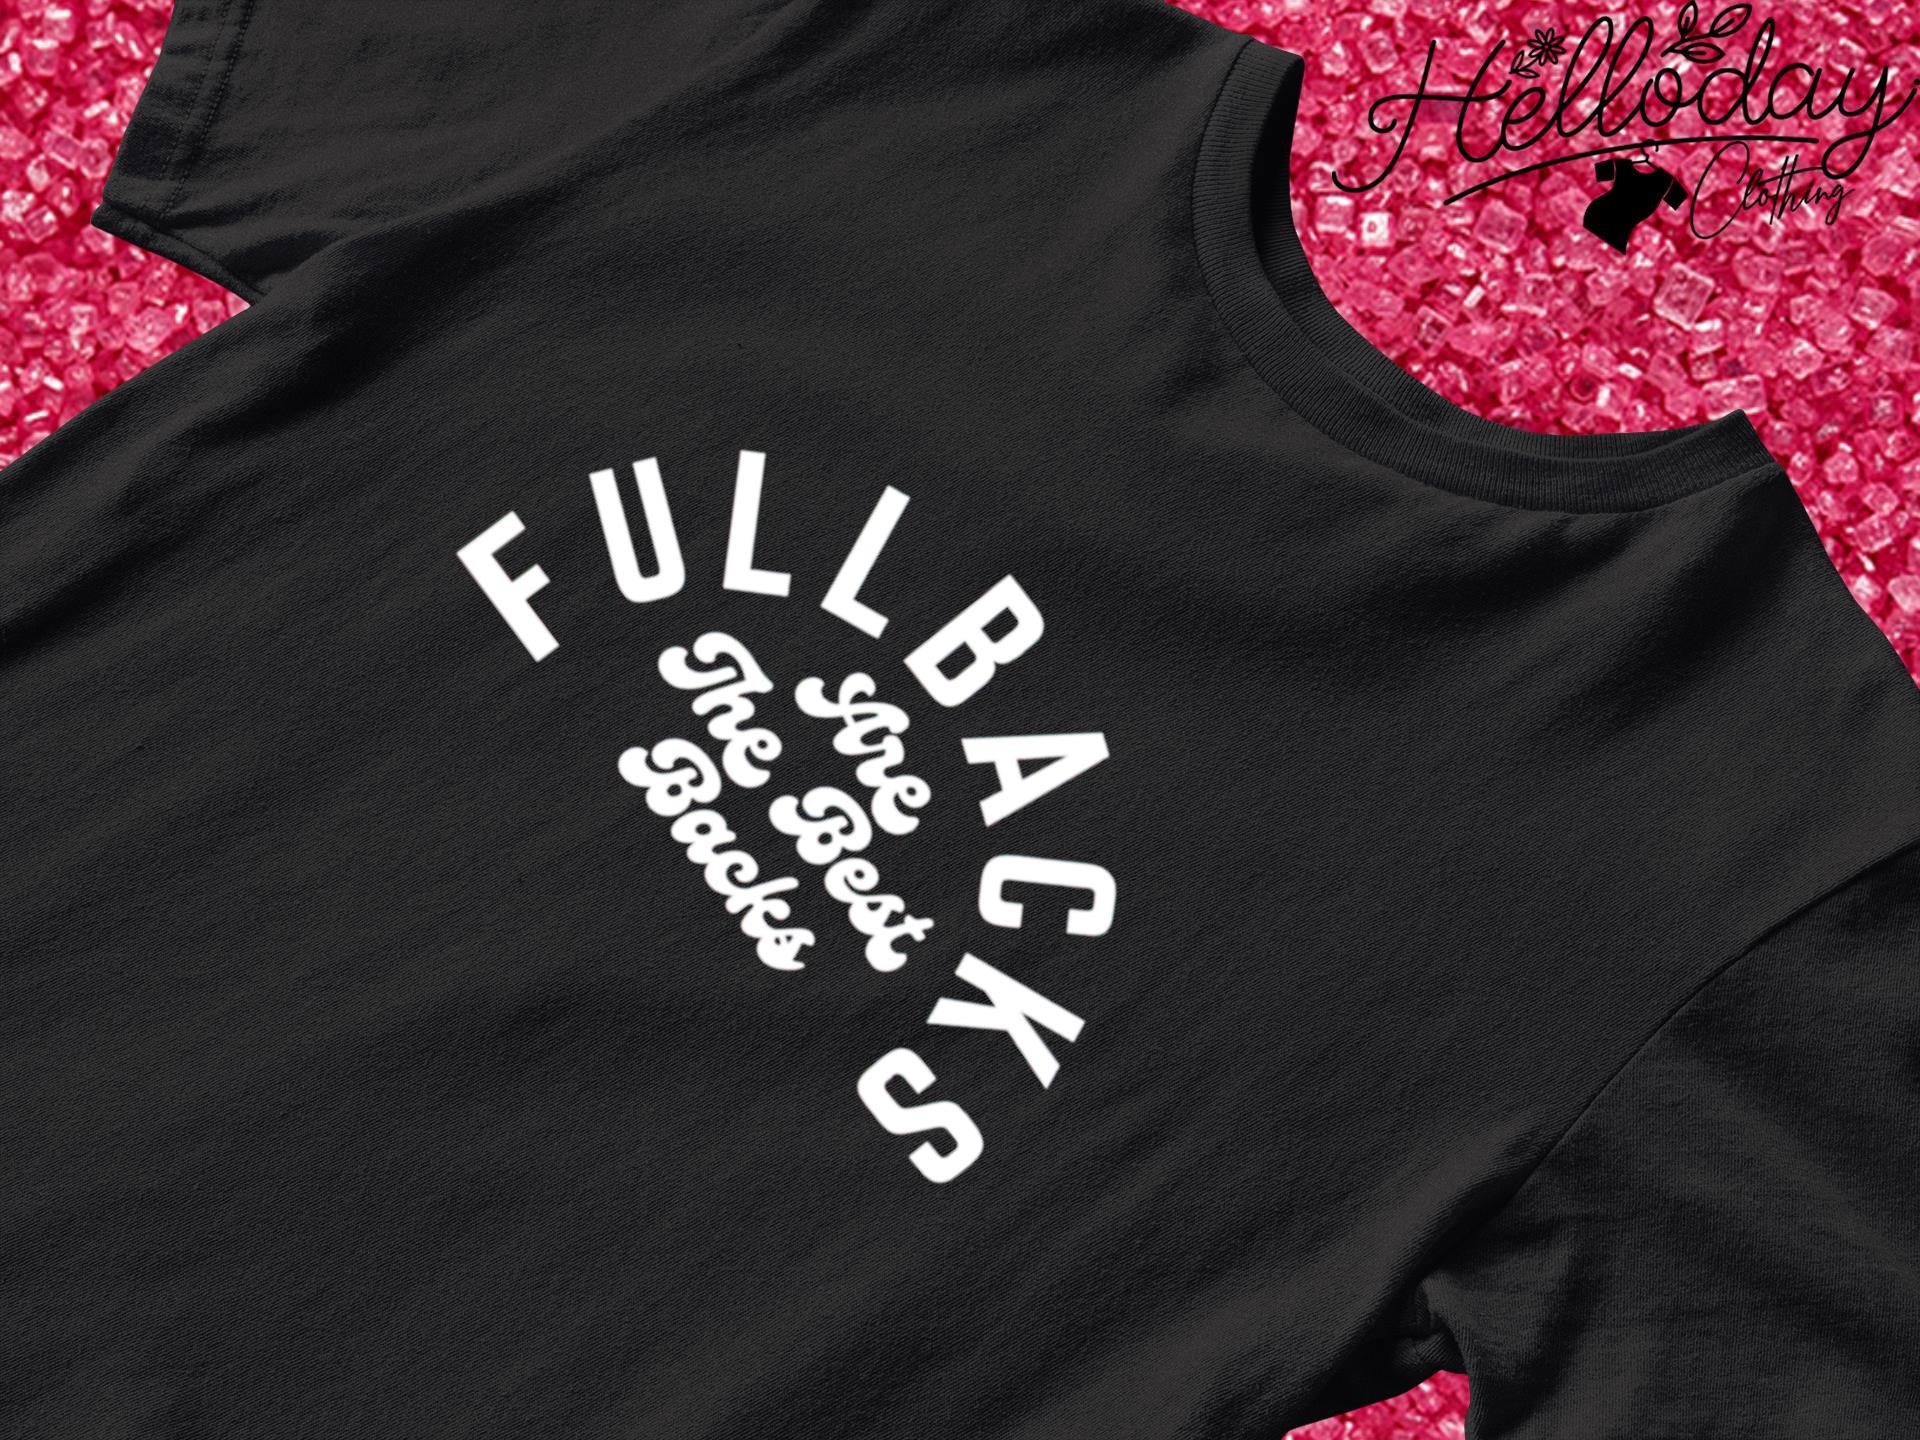 Fullbacks are the best backs T-shirt